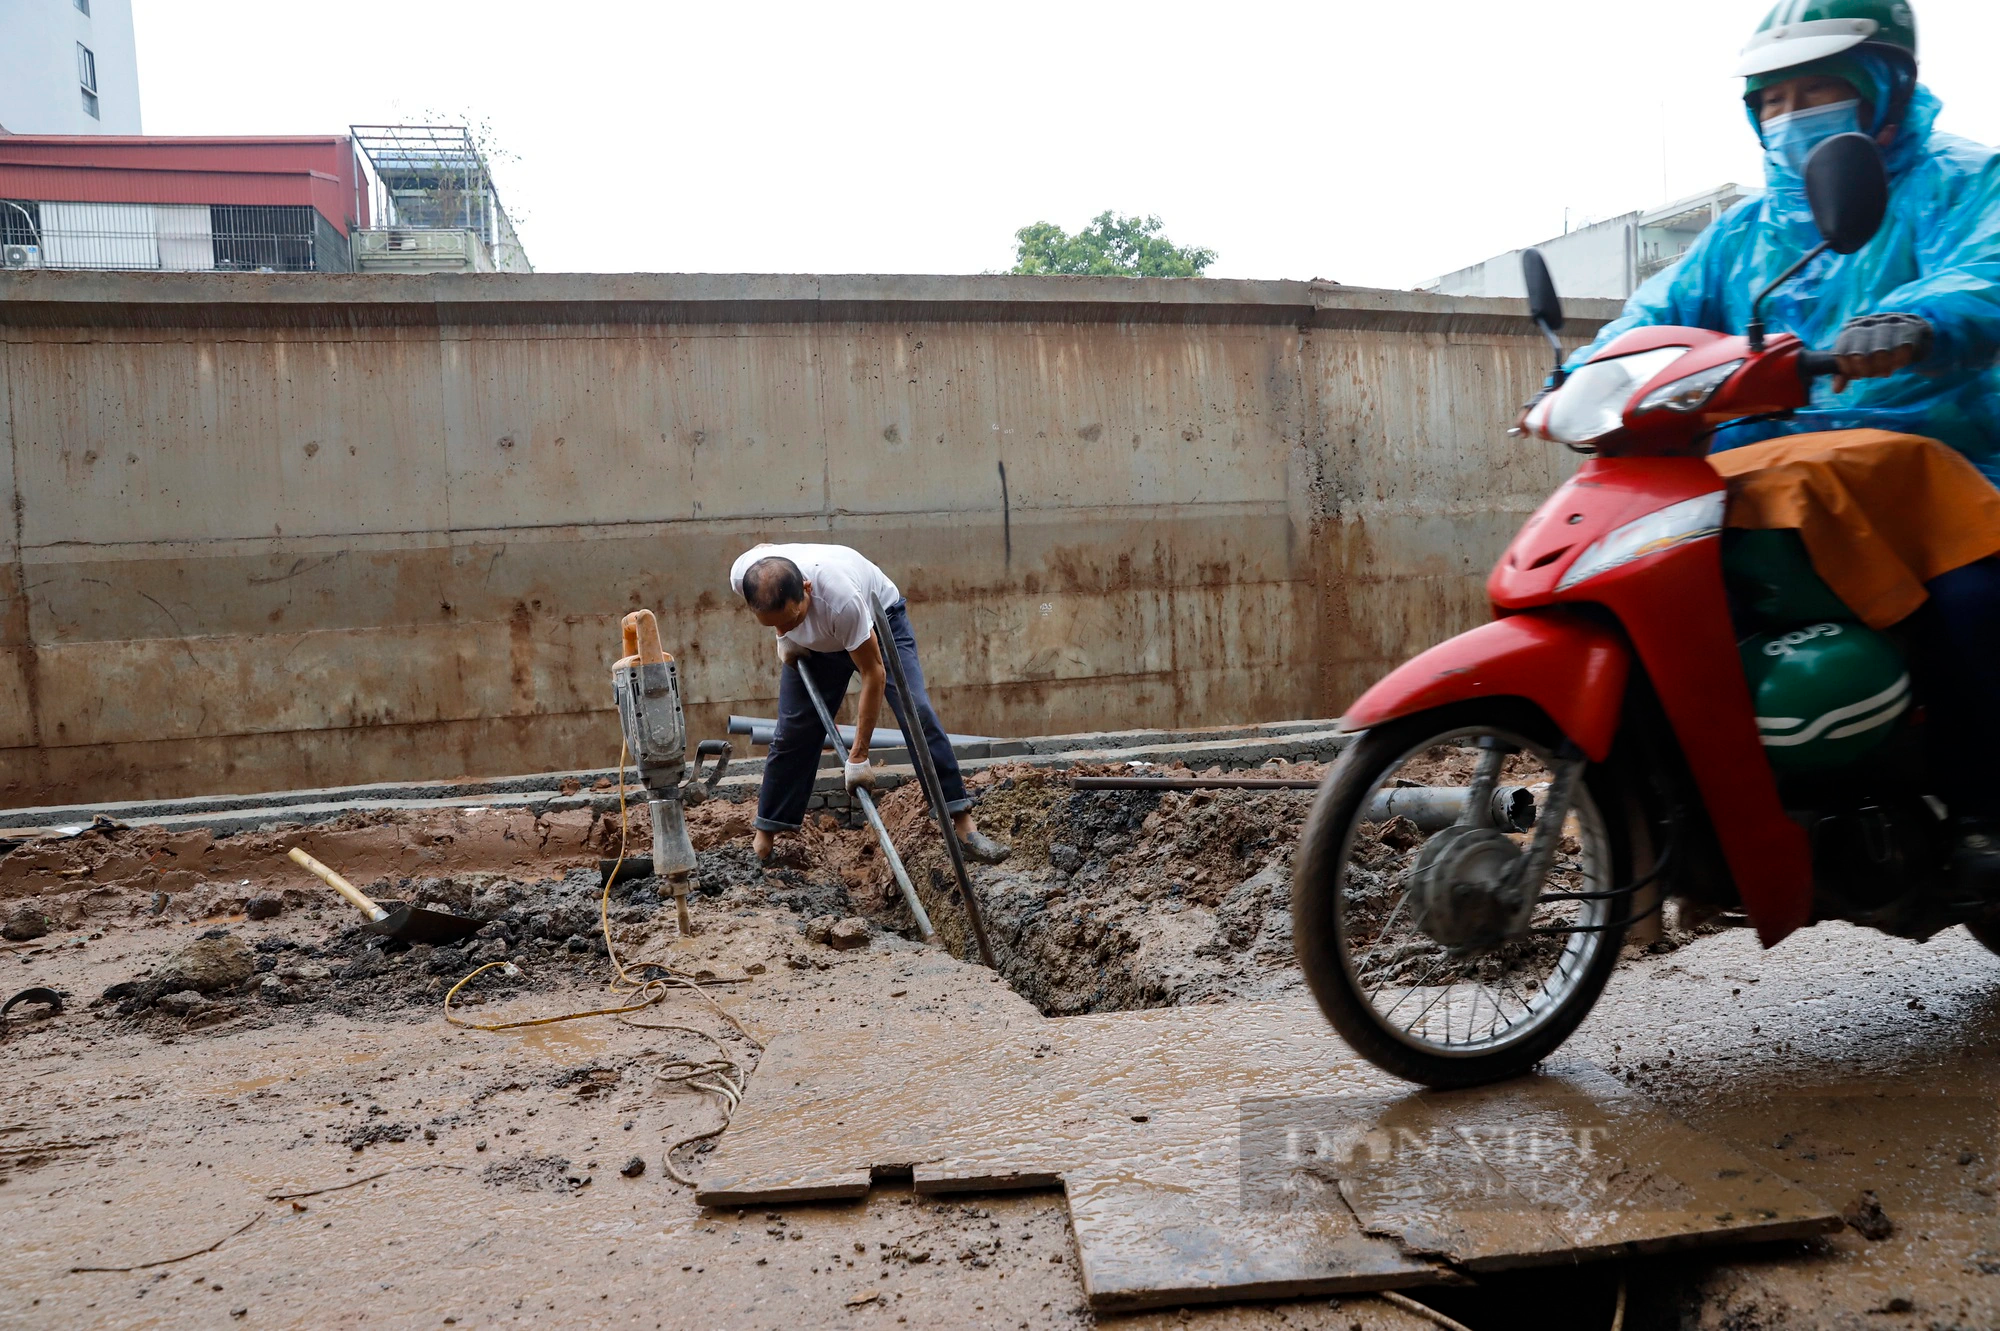 Ôtô sập gầm, xe máy và người đi bộ lội nước qua dự án dài 3,7 km trị giá 815 tỷ đồng ở Hà Nội- Ảnh 6.